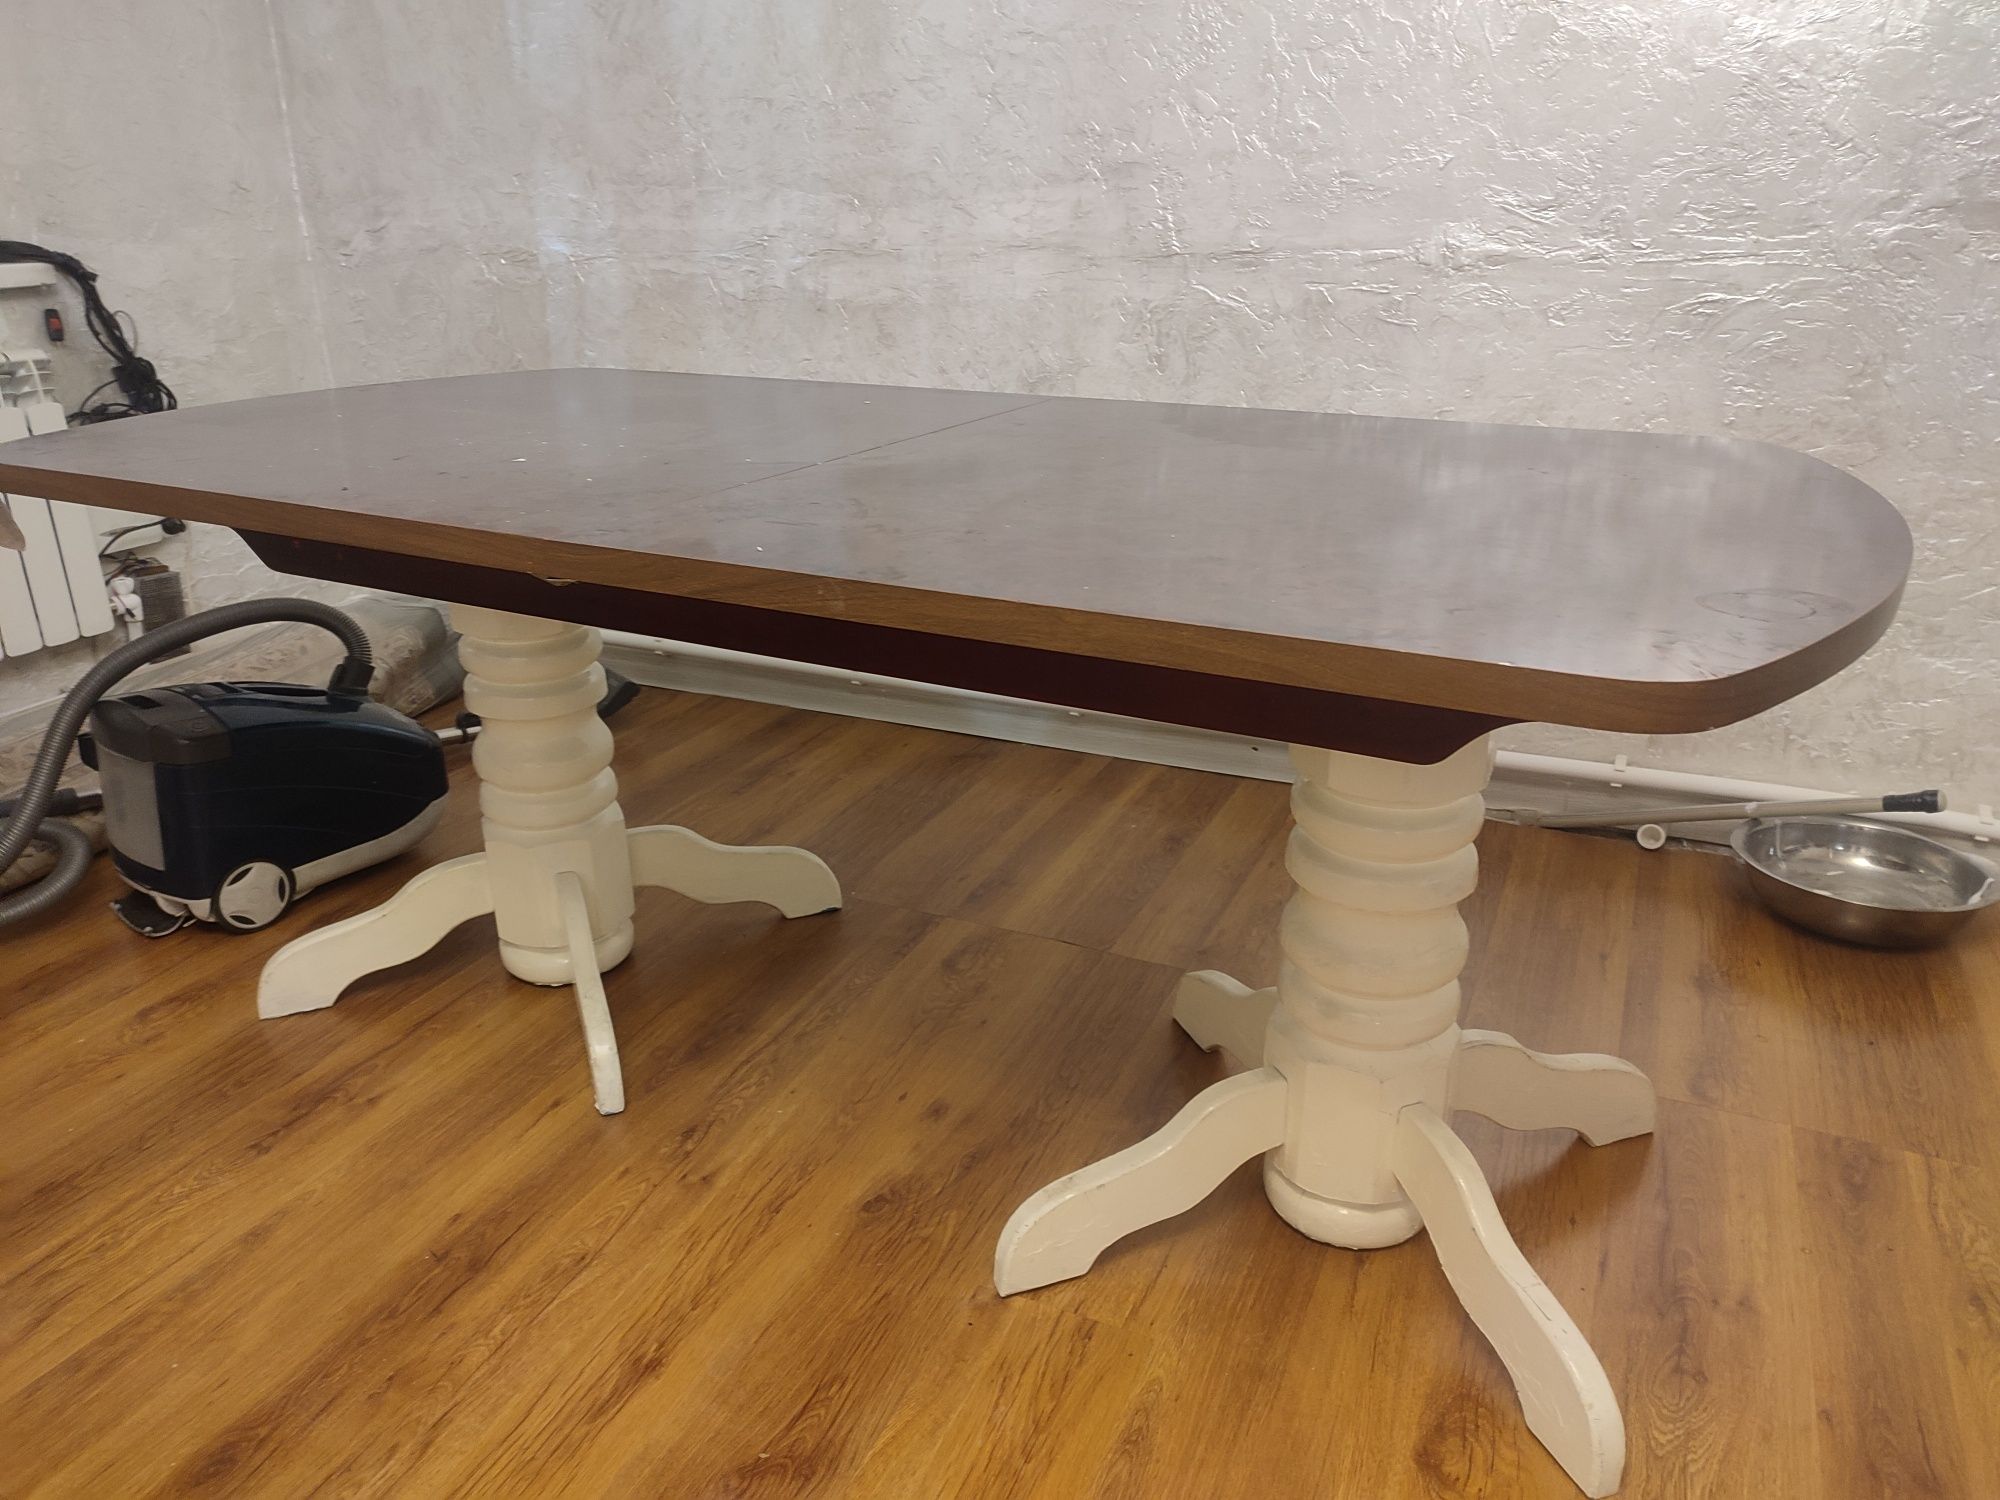 стол на курьих ножках 2 метра может расширяться до 2.5 идеальное сост.